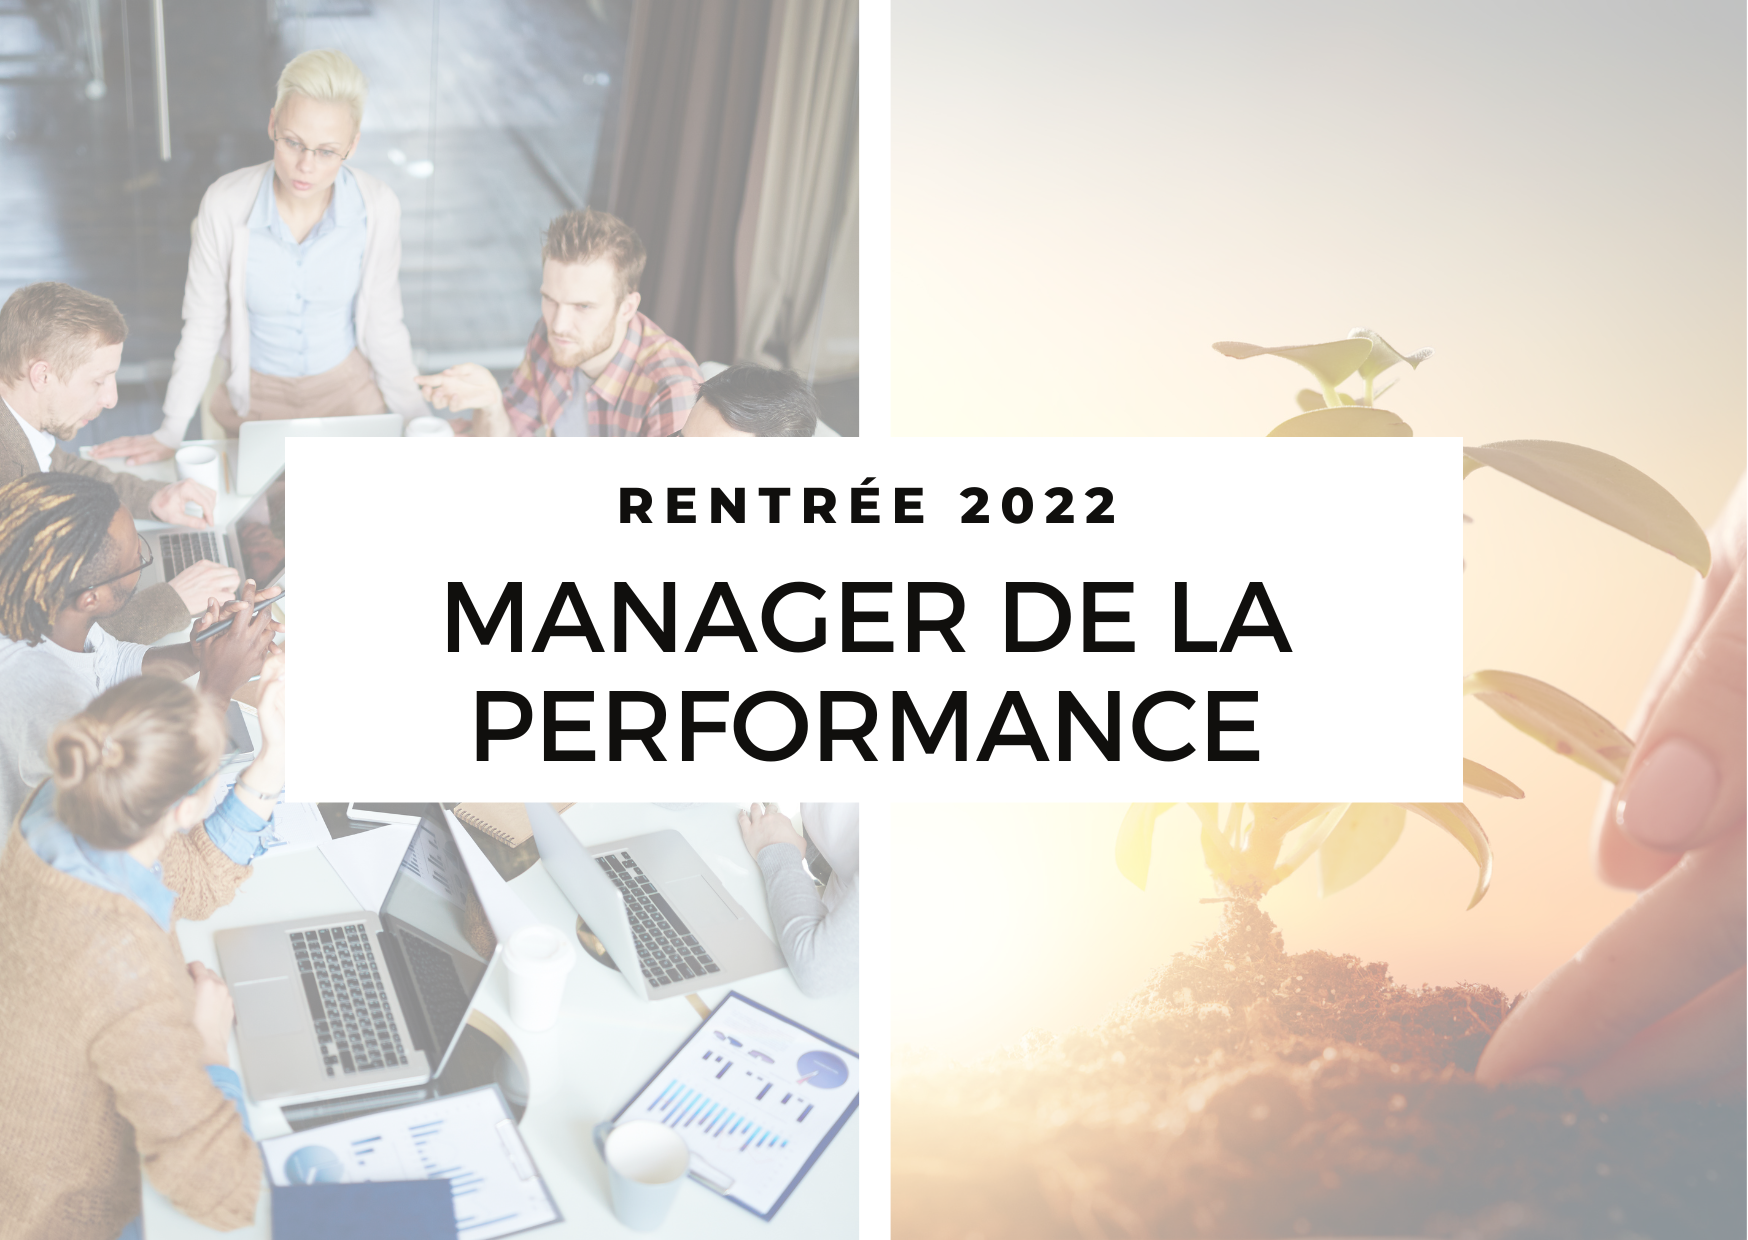 Rentrée 2022 : Manager de la performance